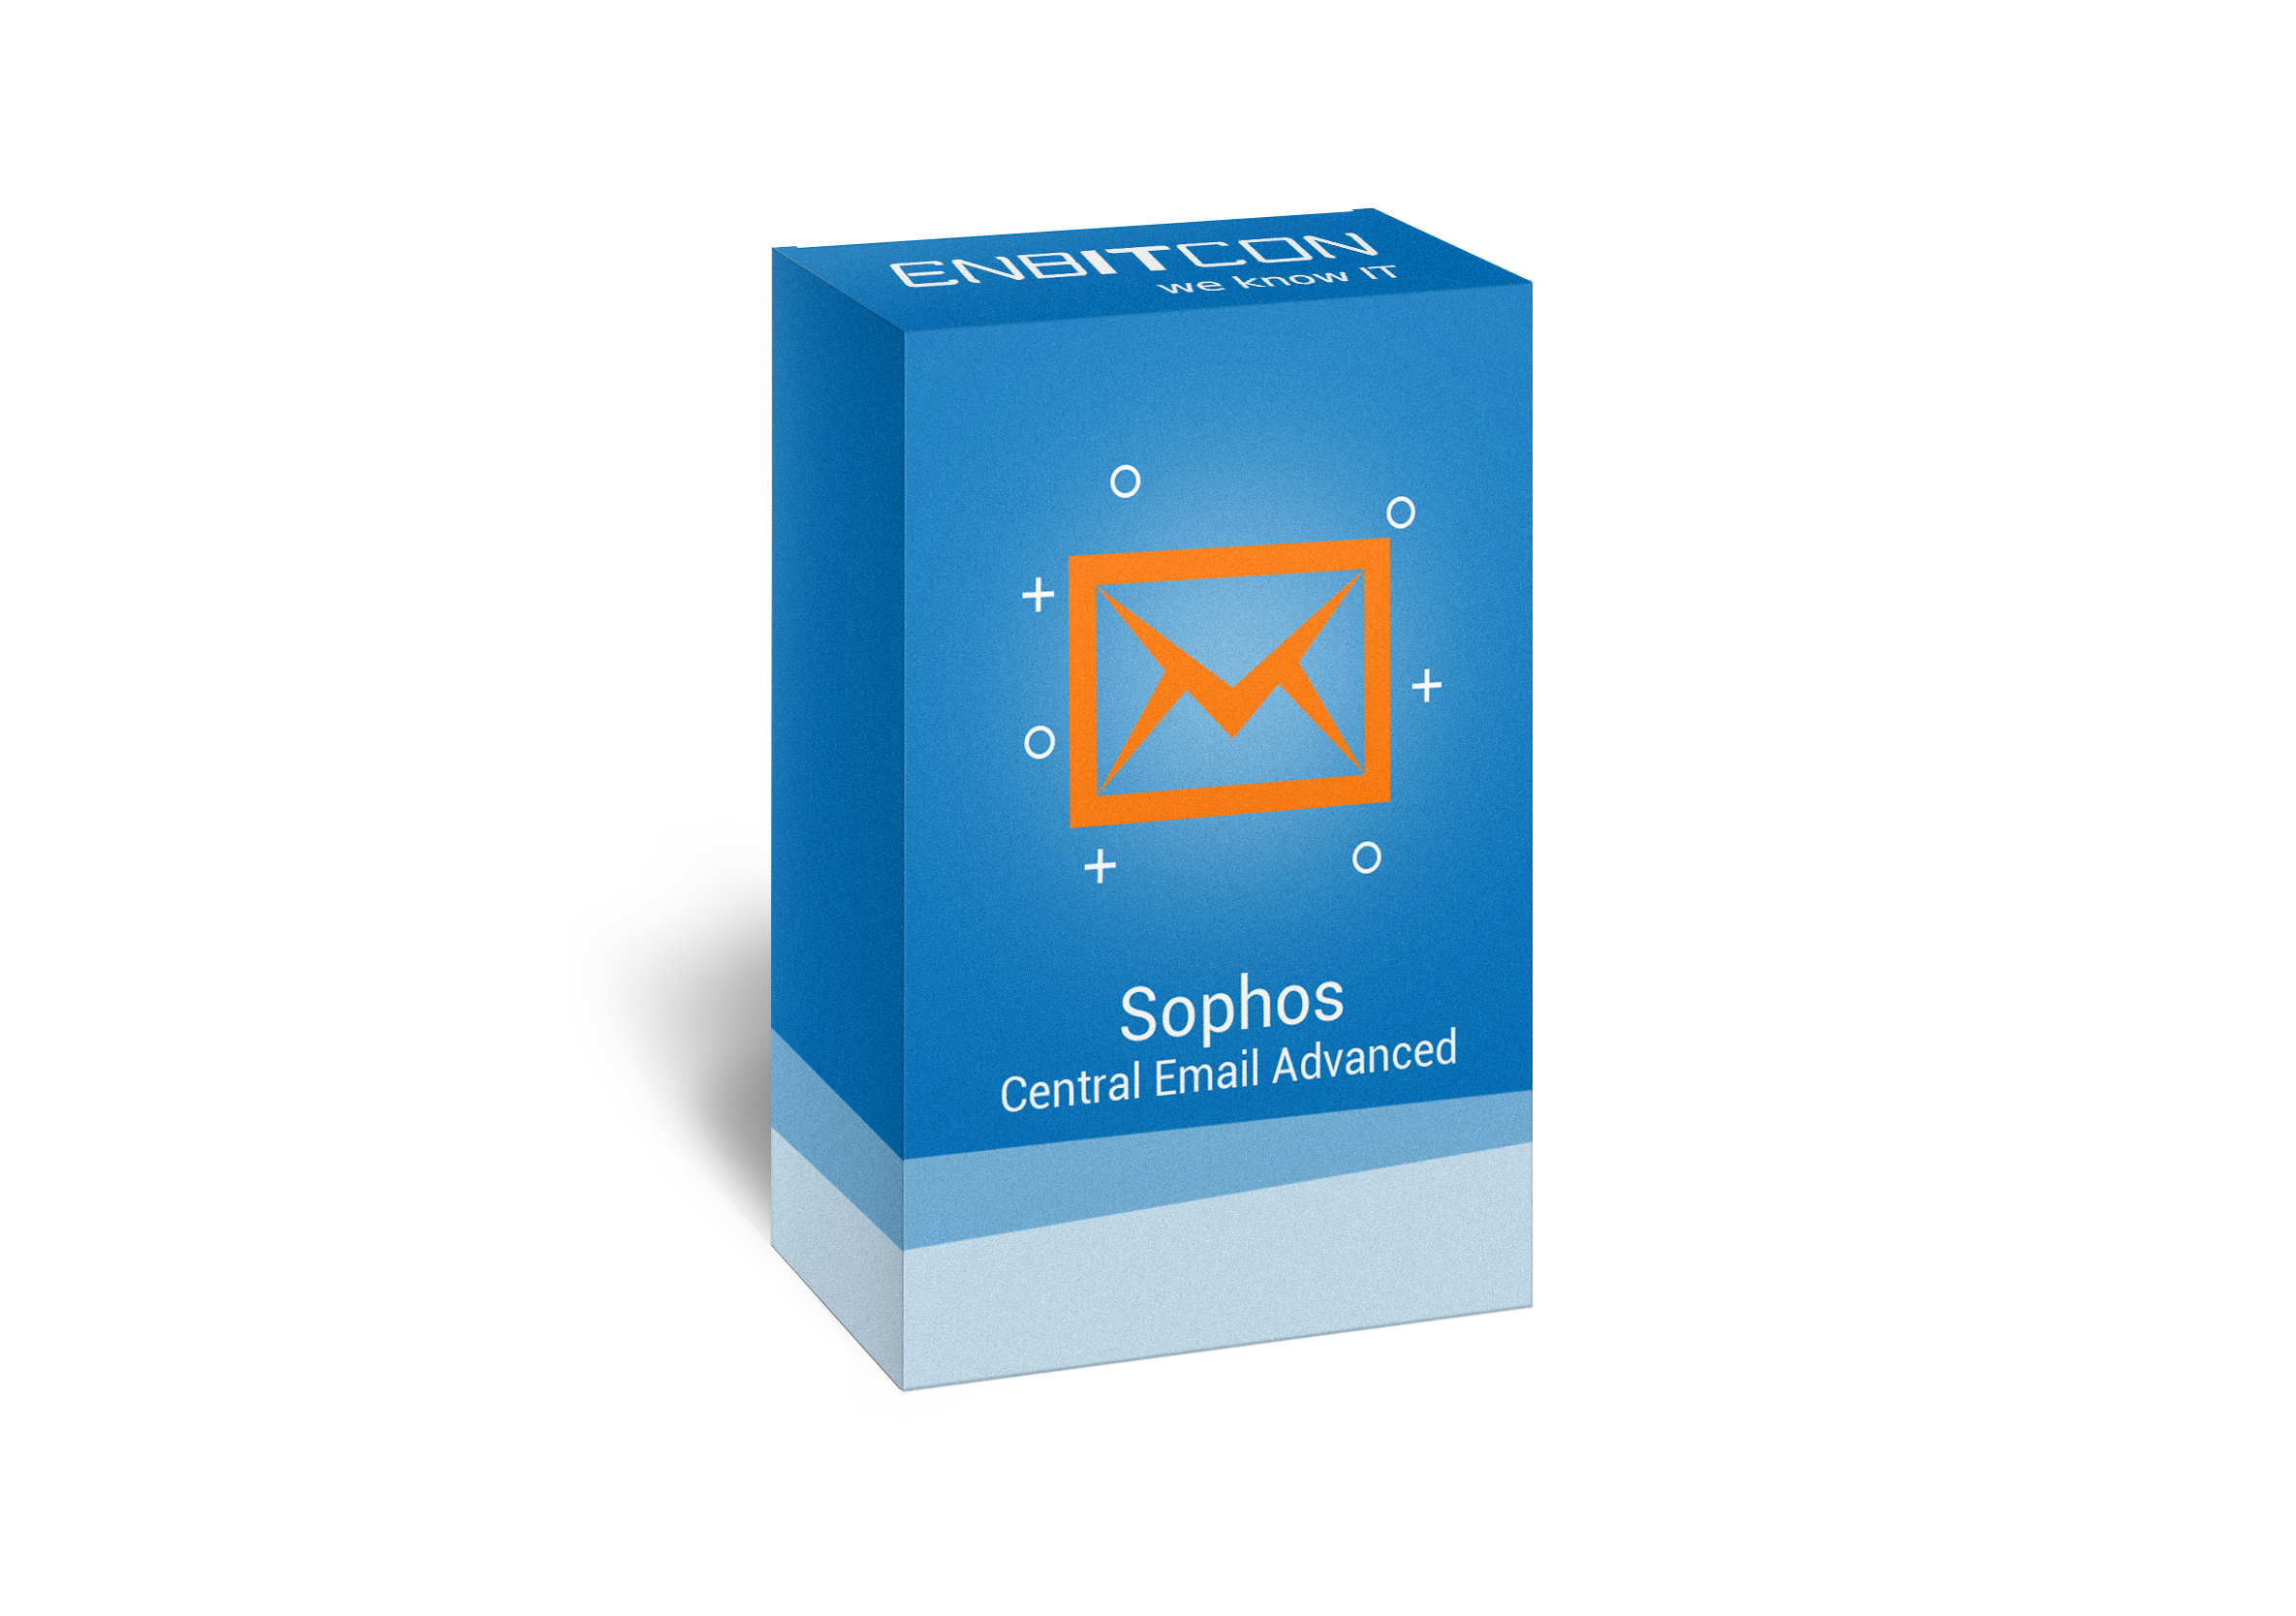 Sophos Central Email Advanced Box Vorschaubild  bestehend aus einem orangenem Brief auf einer blauen Box